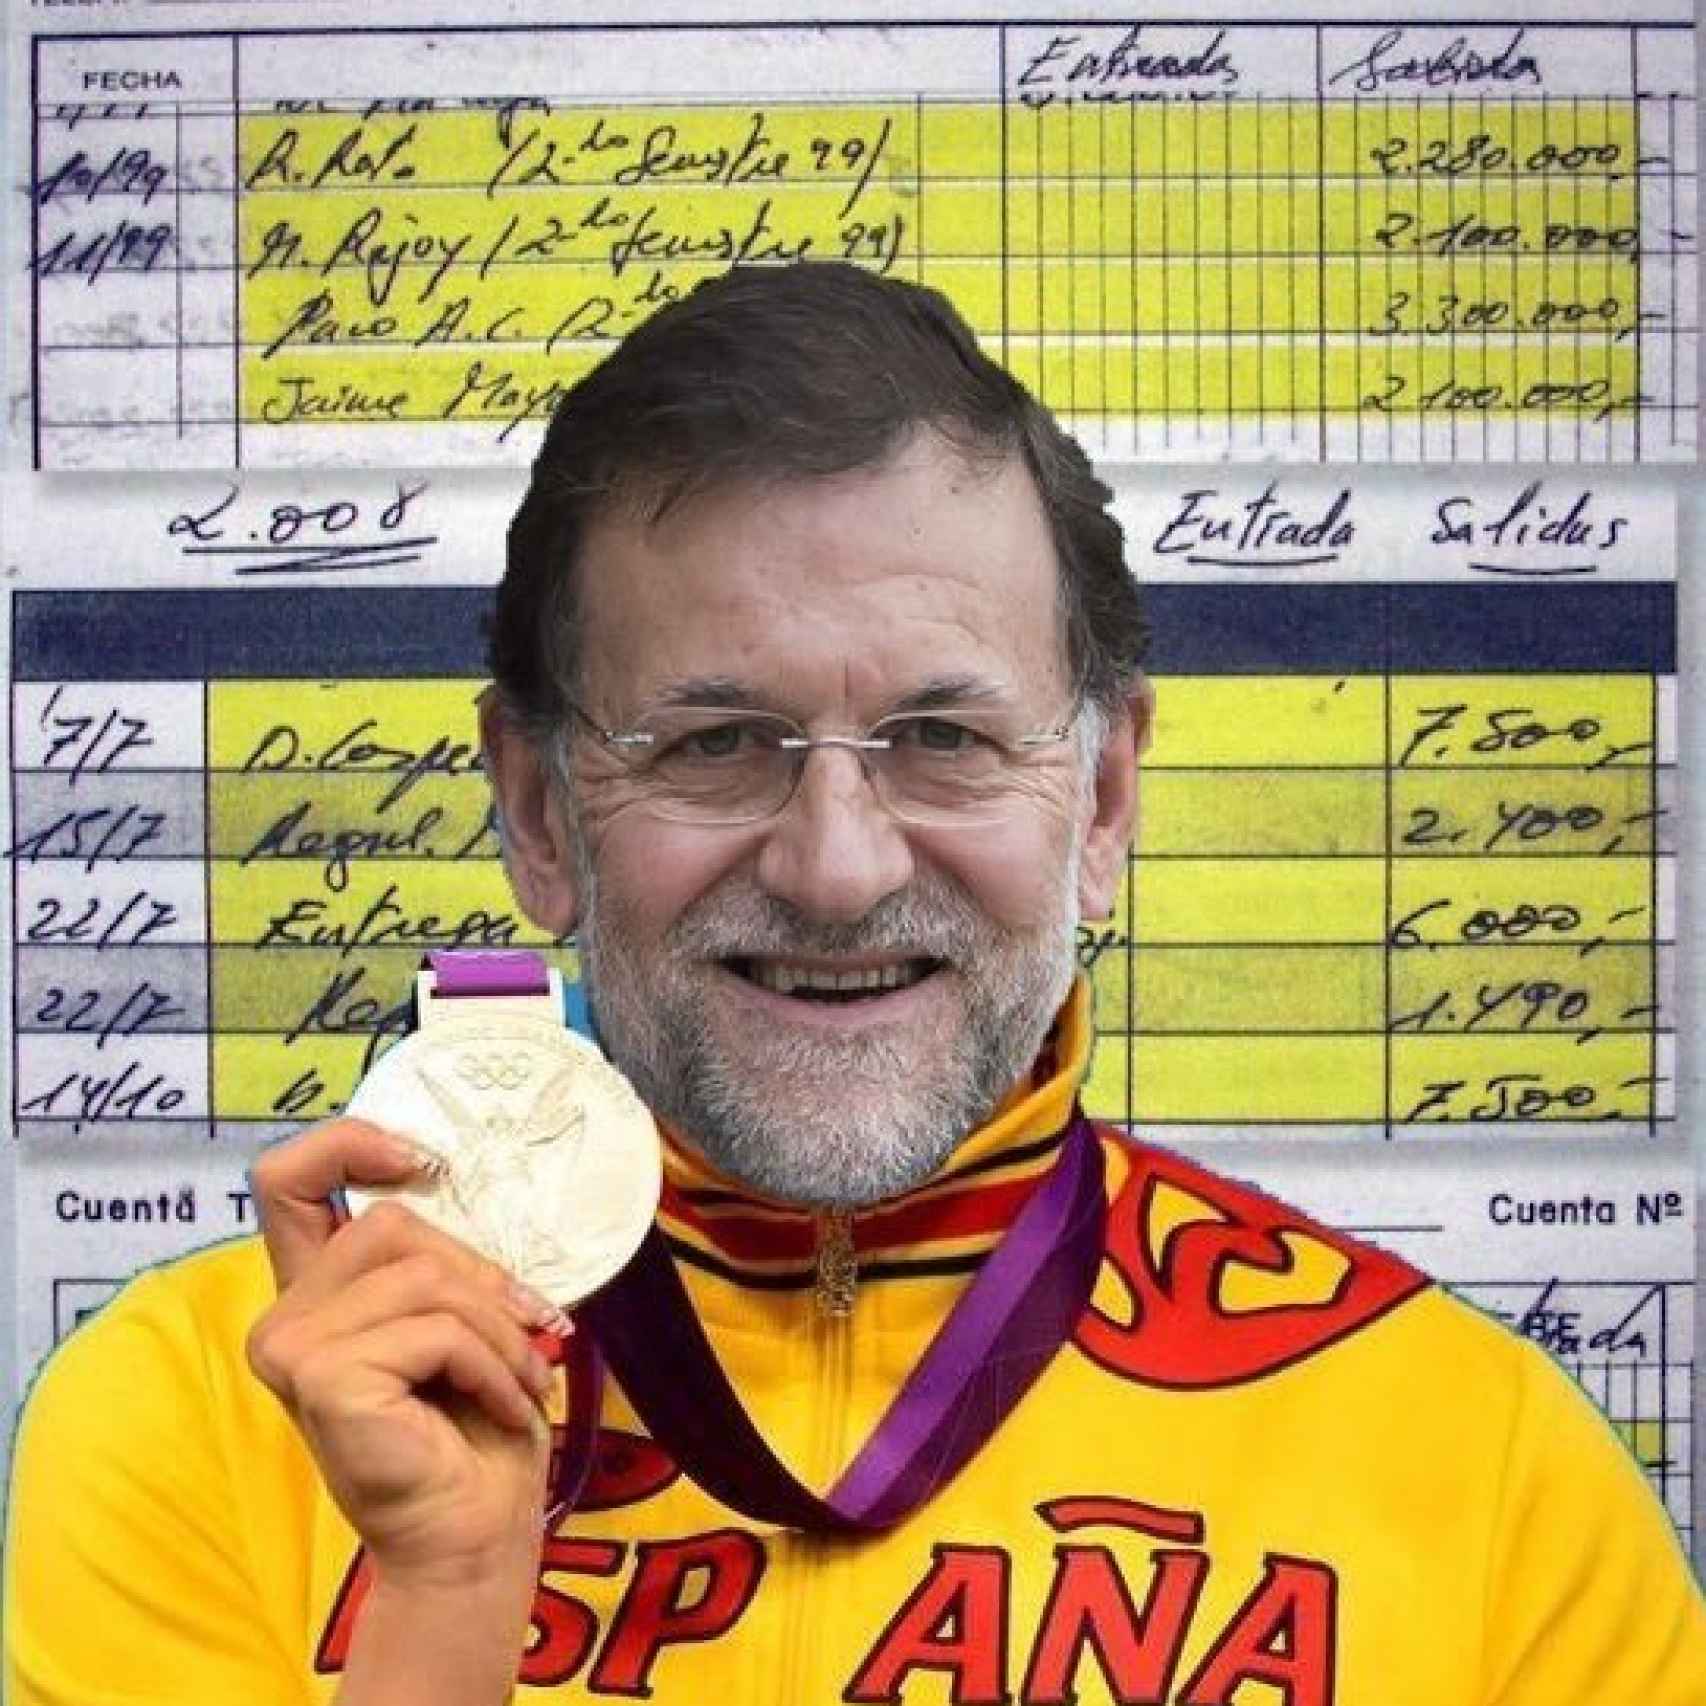 Para los tuiteros, Rajoy claramente #DeberiaSerDeporteOlimpico.